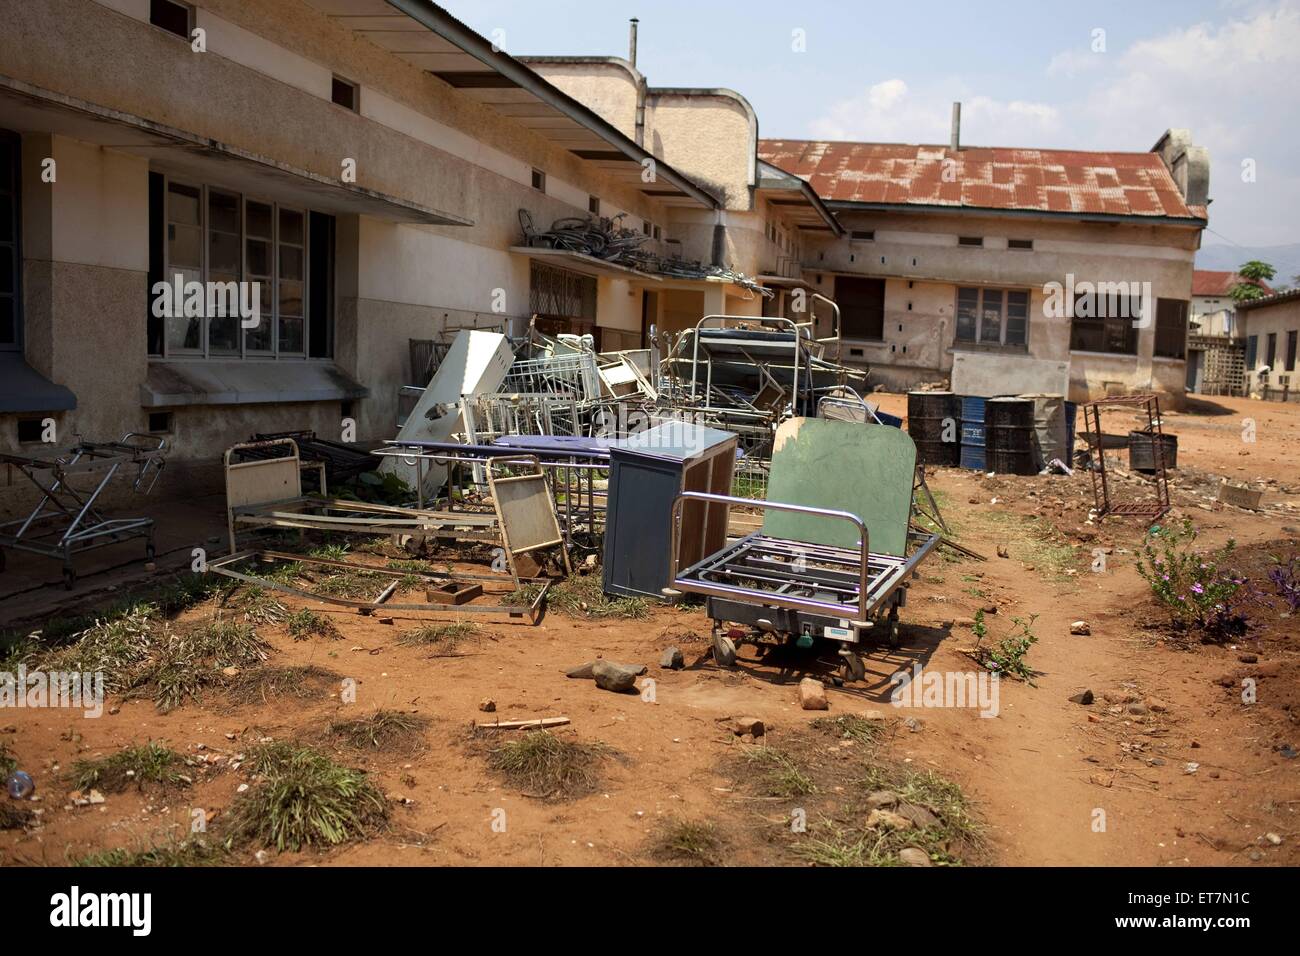 Alte ausrangierte Betten und anderes Inventar liegt im Freien neben einem Krankenhaus, Burundi Bujumbura Mairie, Bujumbura | ol Foto Stock